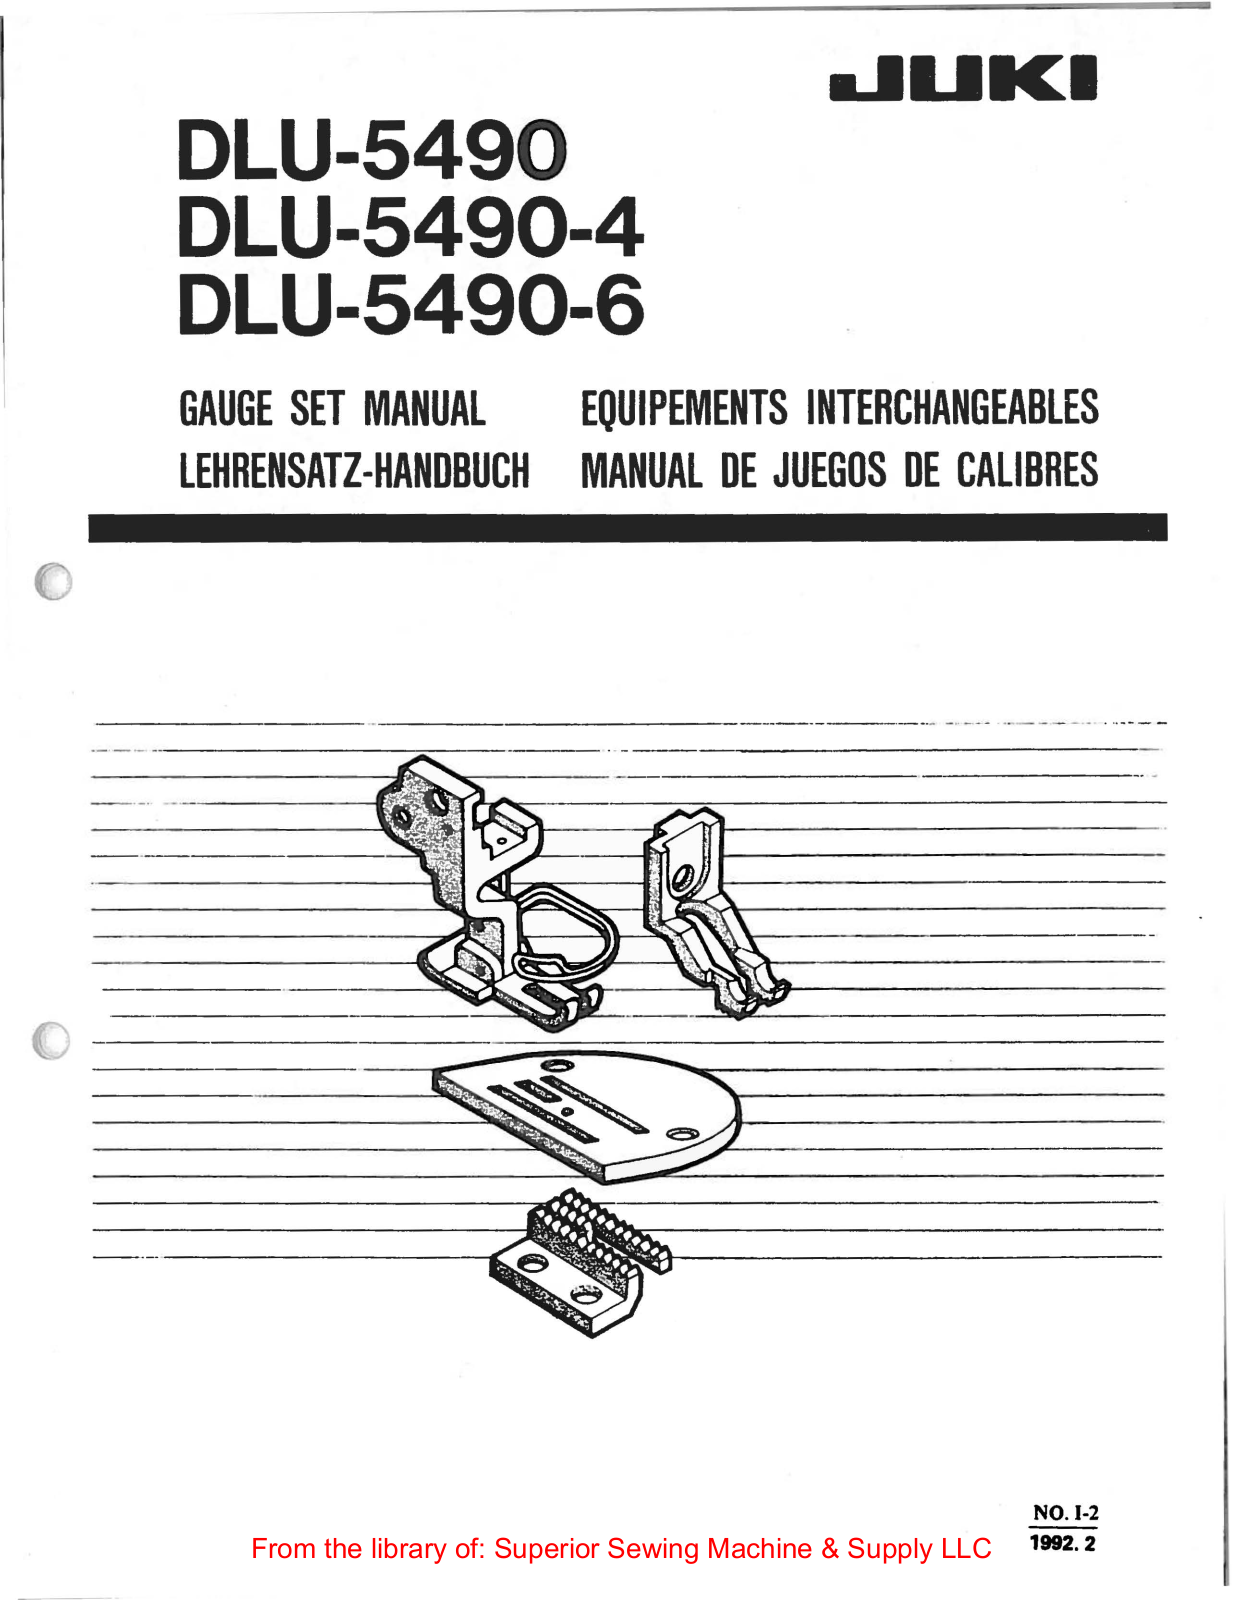 Juki DLU-5490, DLU-5490-4, DLU-5490-6 Manual